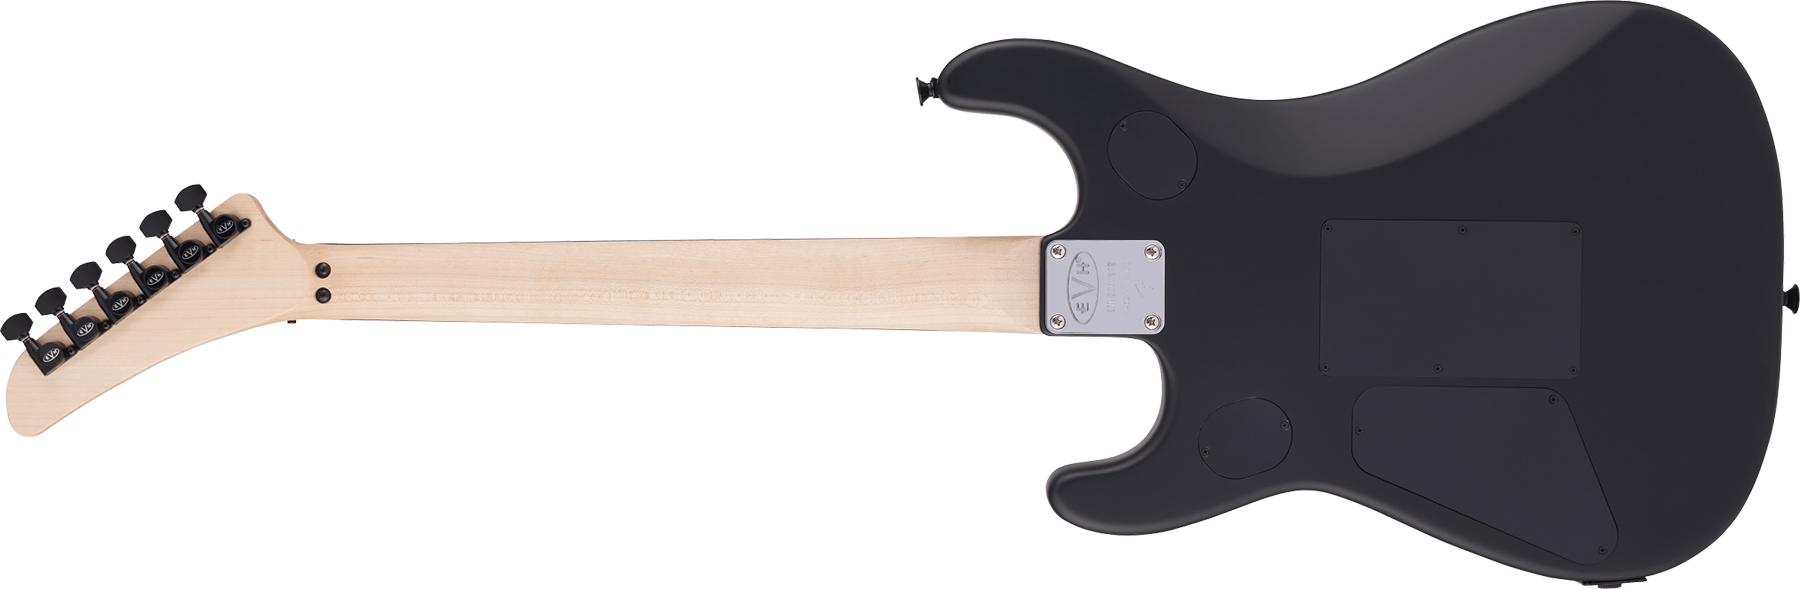 Evh 5150 Standard Mex 2h Fr Eb - Stealth Black - Str shape electric guitar - Variation 1